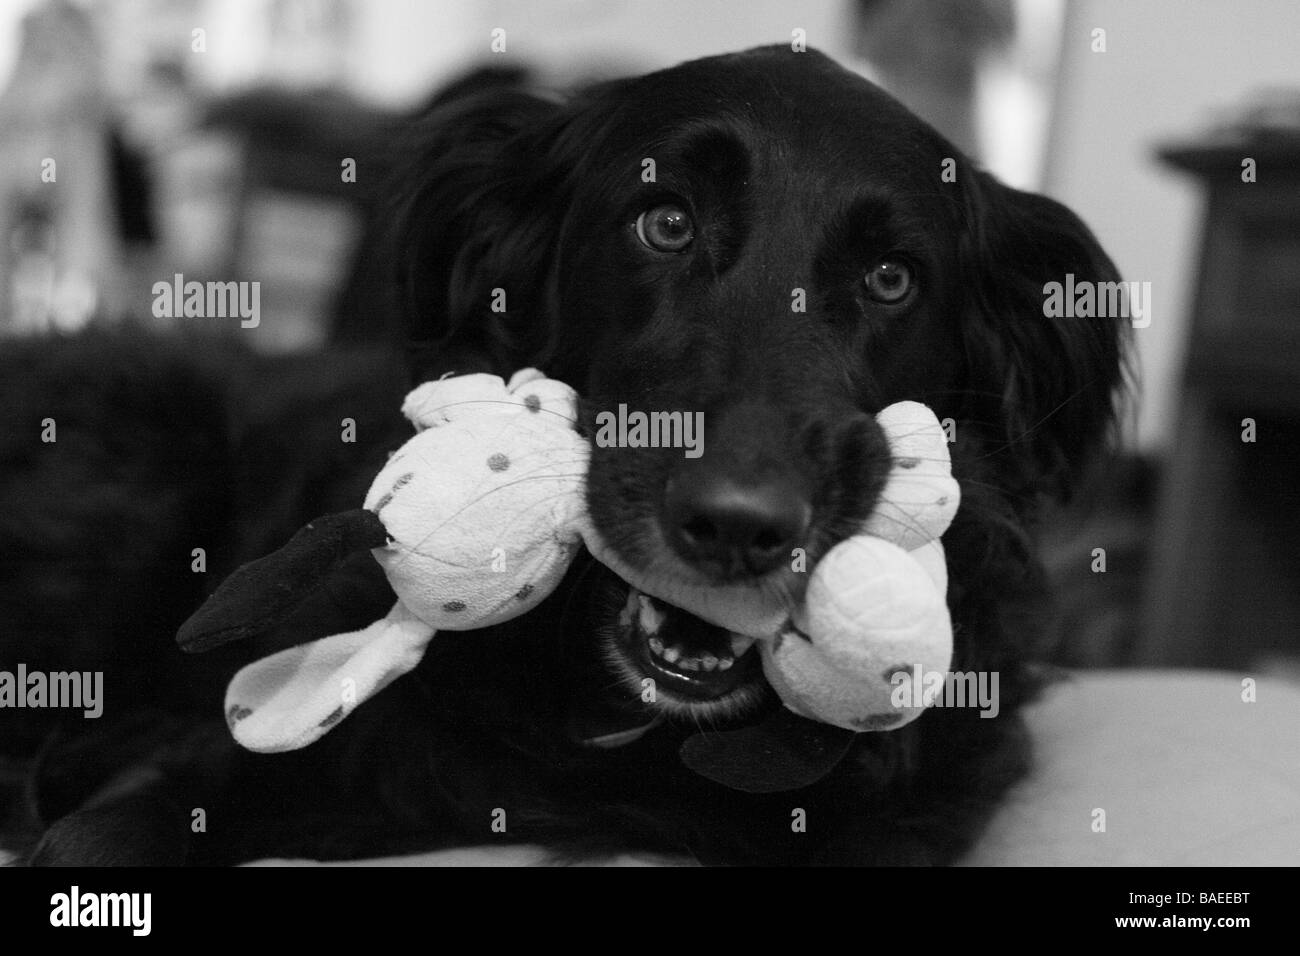 Nahaufnahme eines Hundes mit einem Spielzeug im Maul in schwarz / weiß Stockfoto